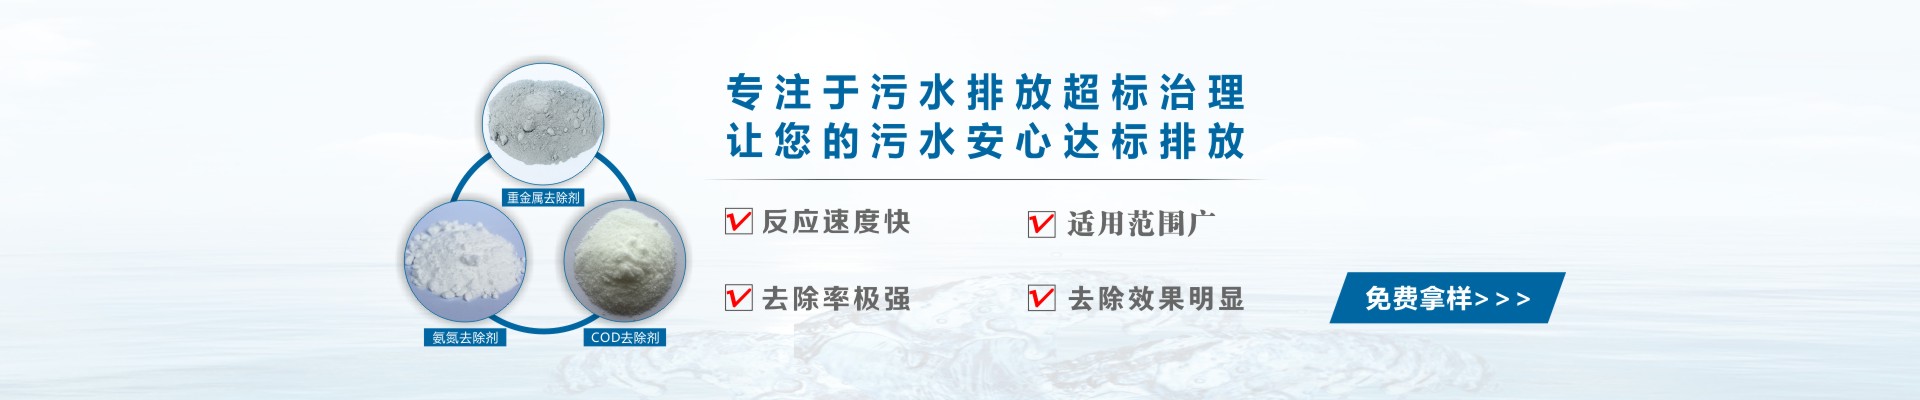 惠州污水处理环保公司-盛久环保